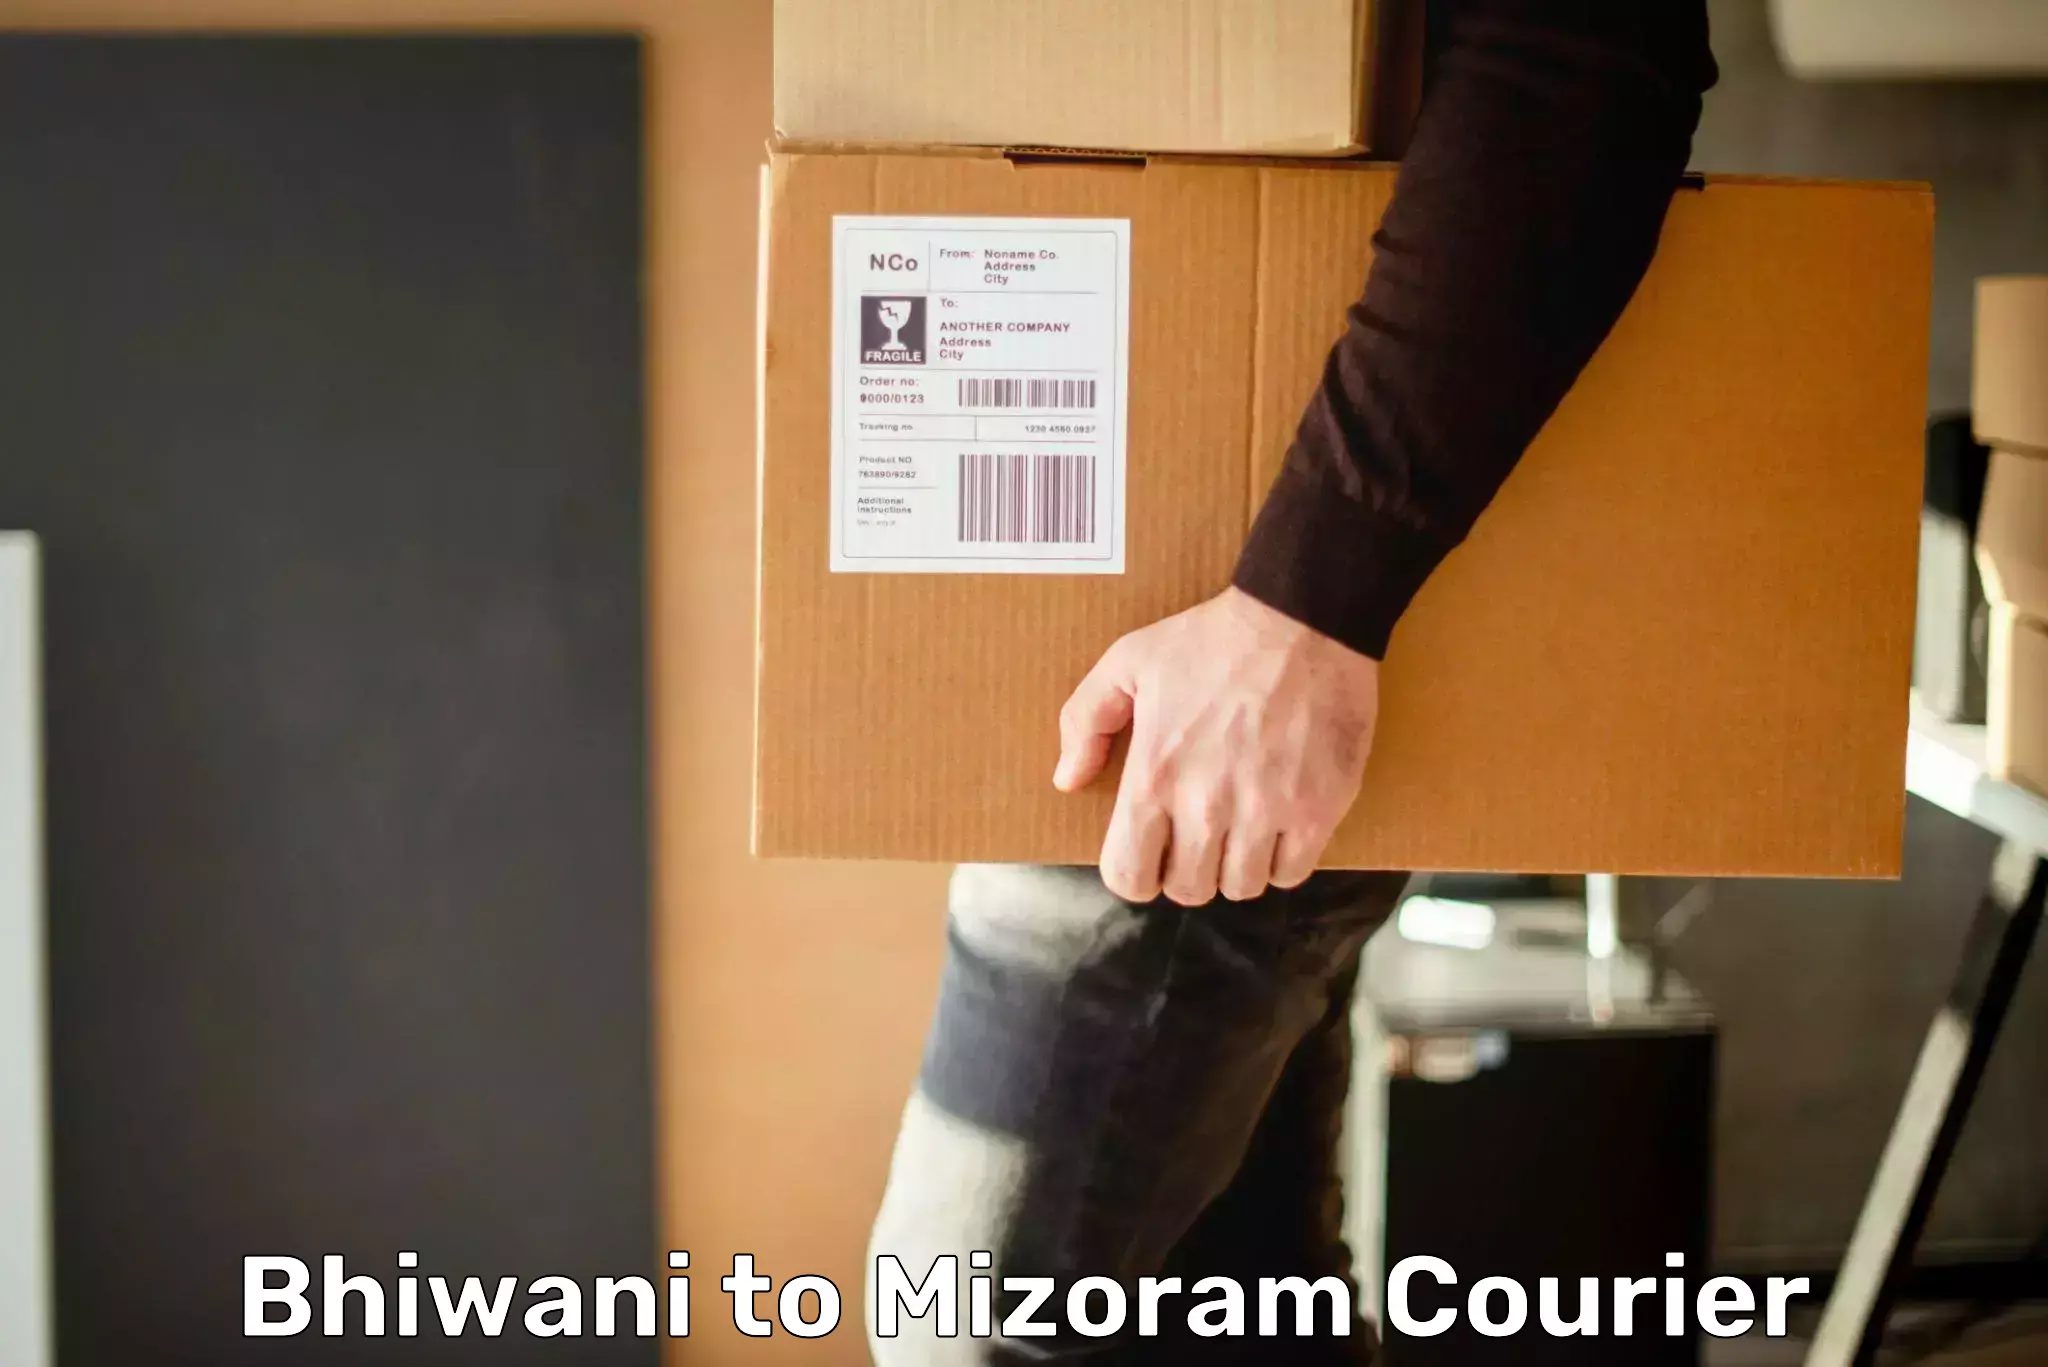 Next-day freight services Bhiwani to Mizoram